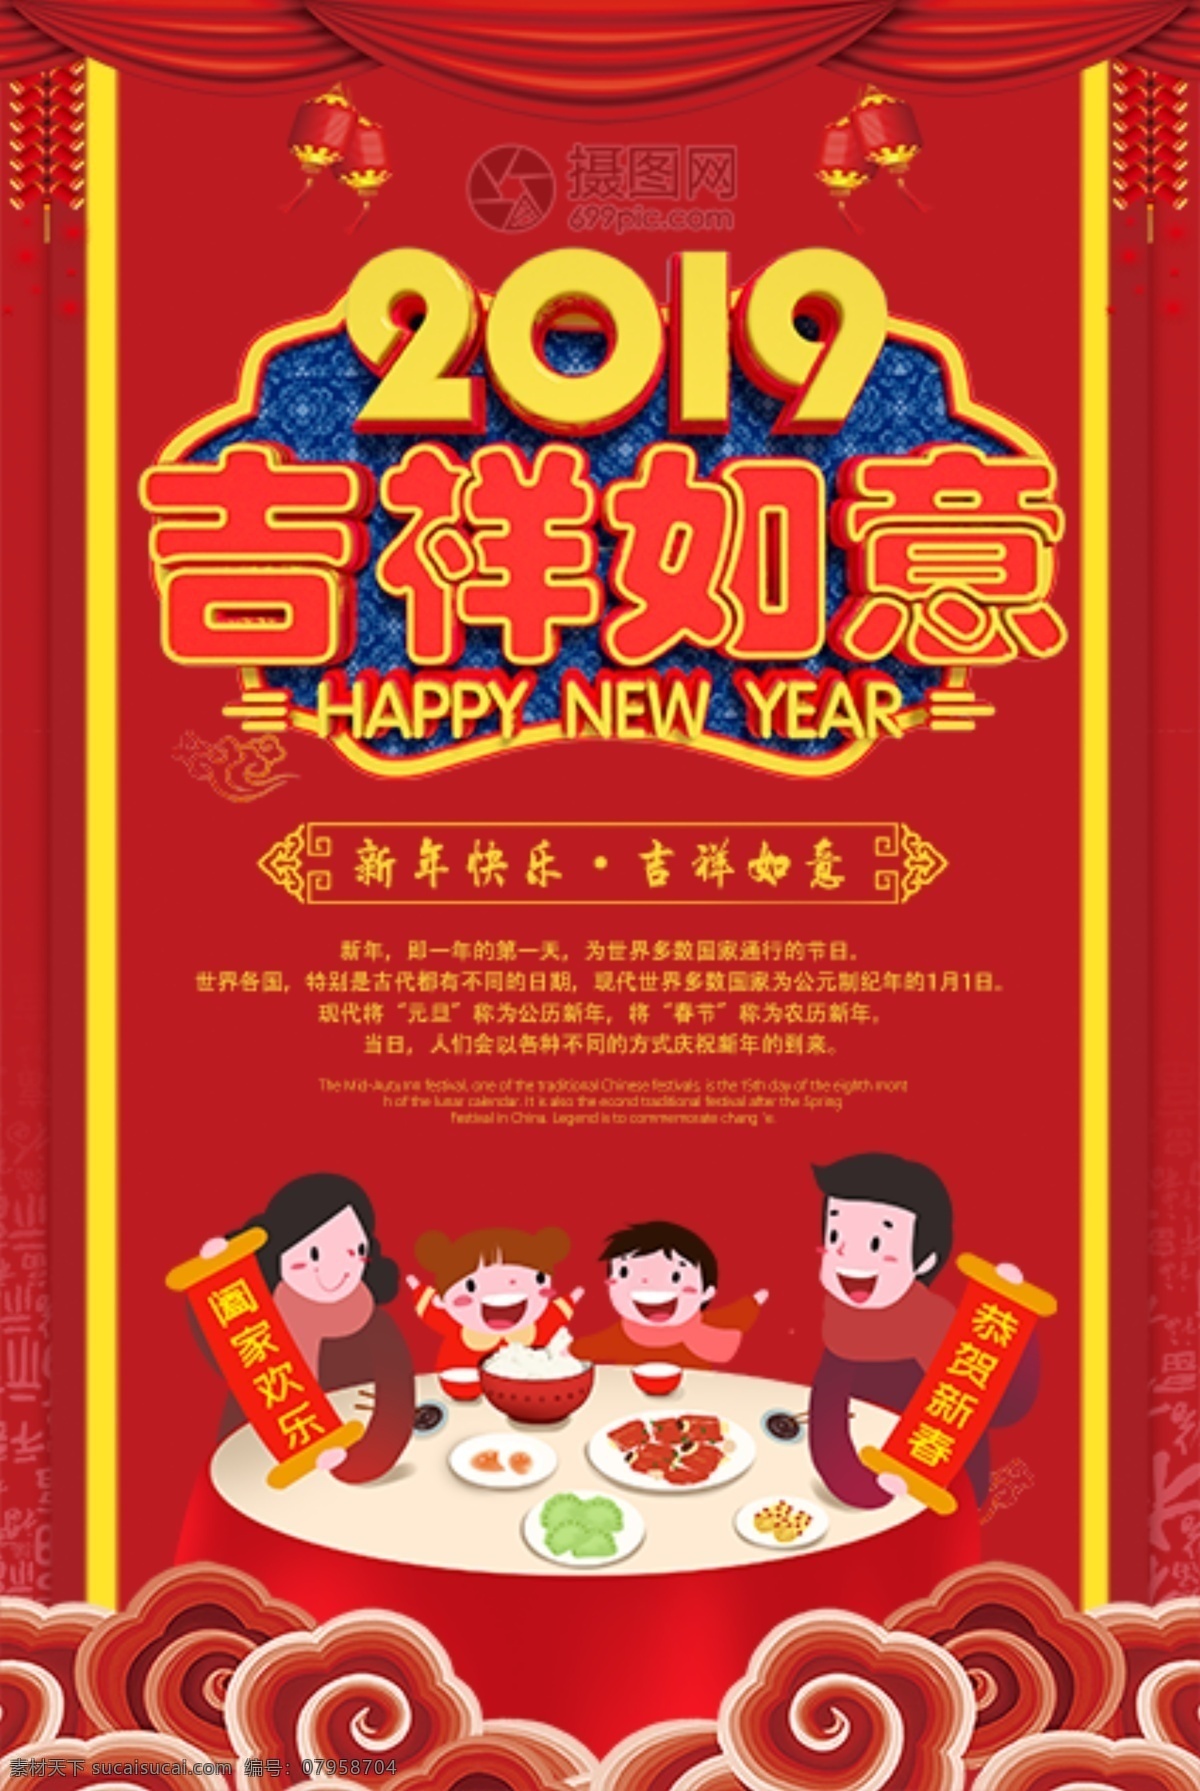 2019 吉祥如意 新年 节日 海报 节日海报 新年快乐 猪年海报 新春 春节